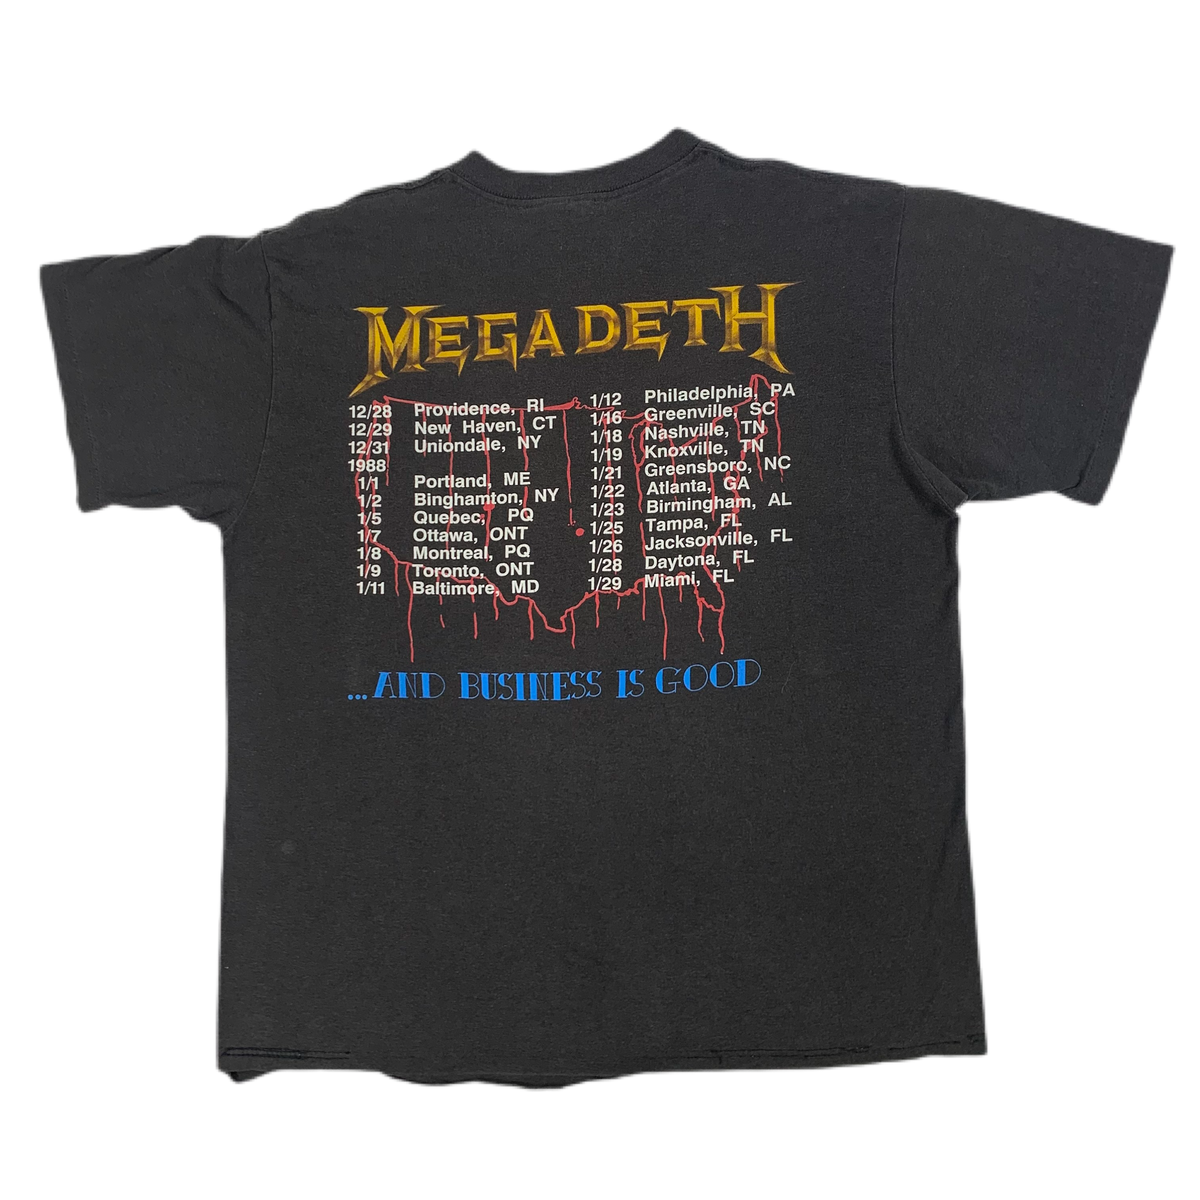 Vintage Megadeth &quot;Killing Is My Business&quot; T-Shirt